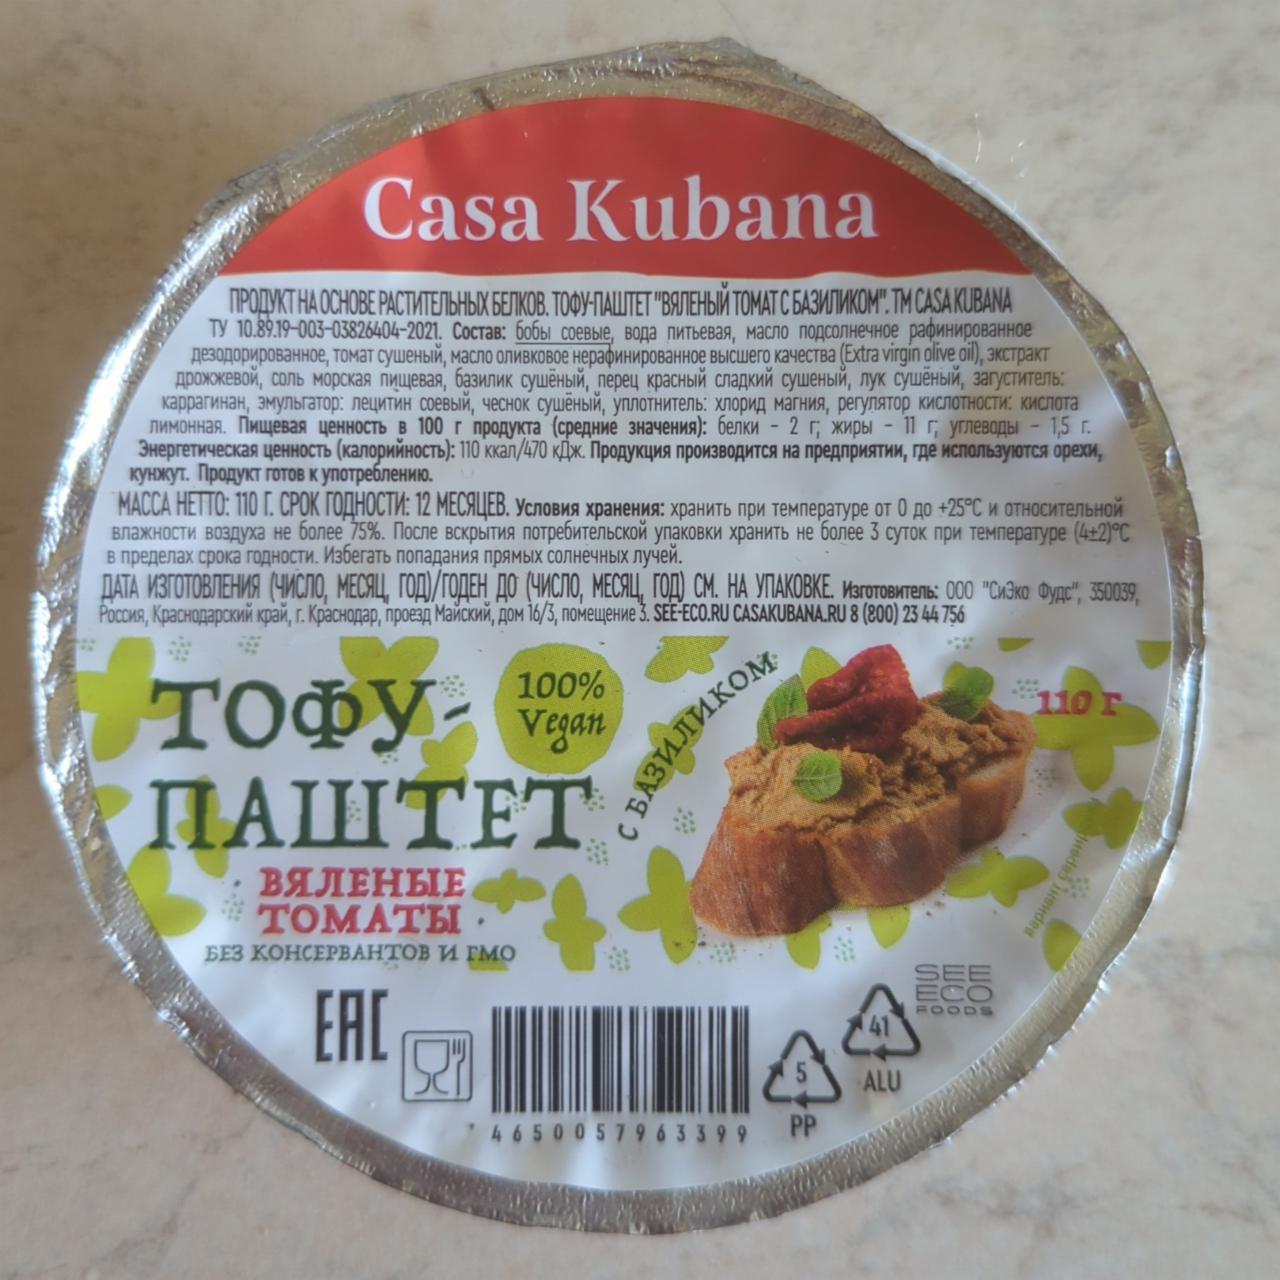 Фото - Тофу-паштет вяленые томаты Casa Kubana